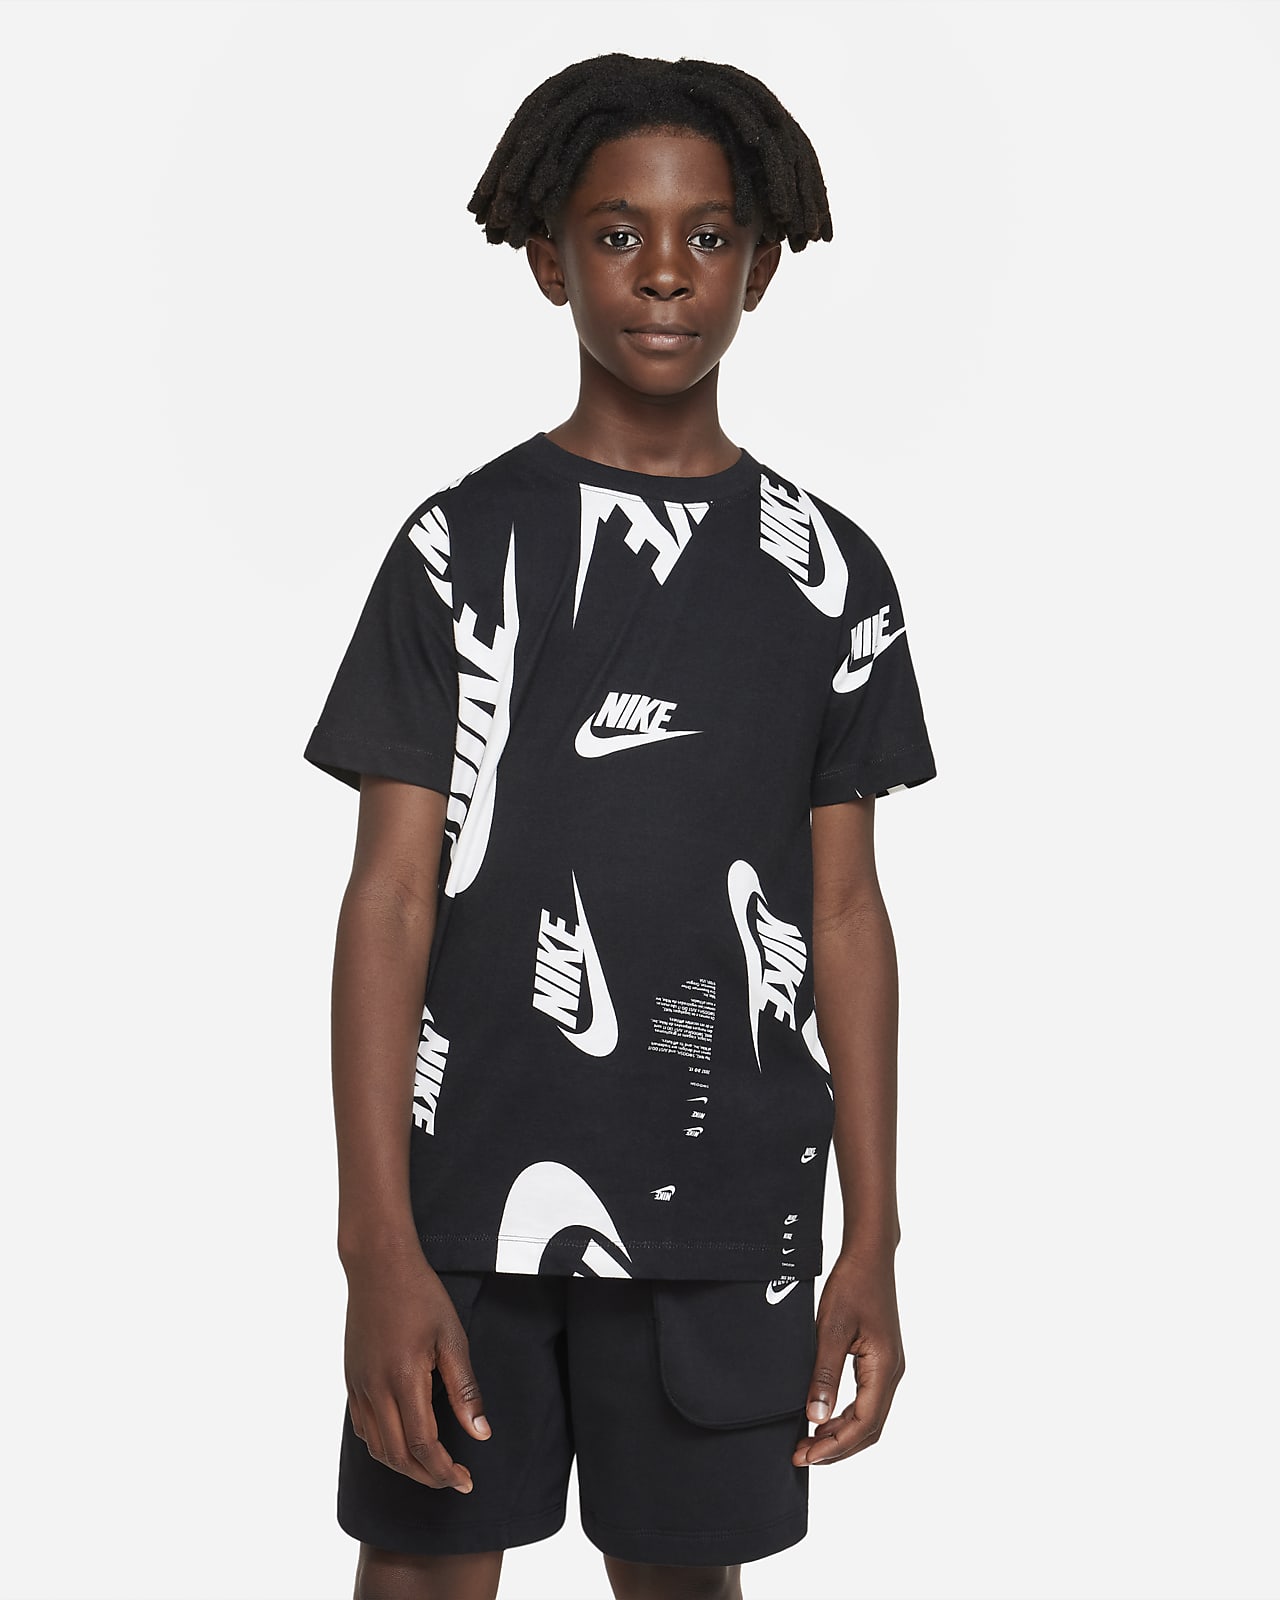 Nike Sportswear Older Kids' (Boys') T-Shirt